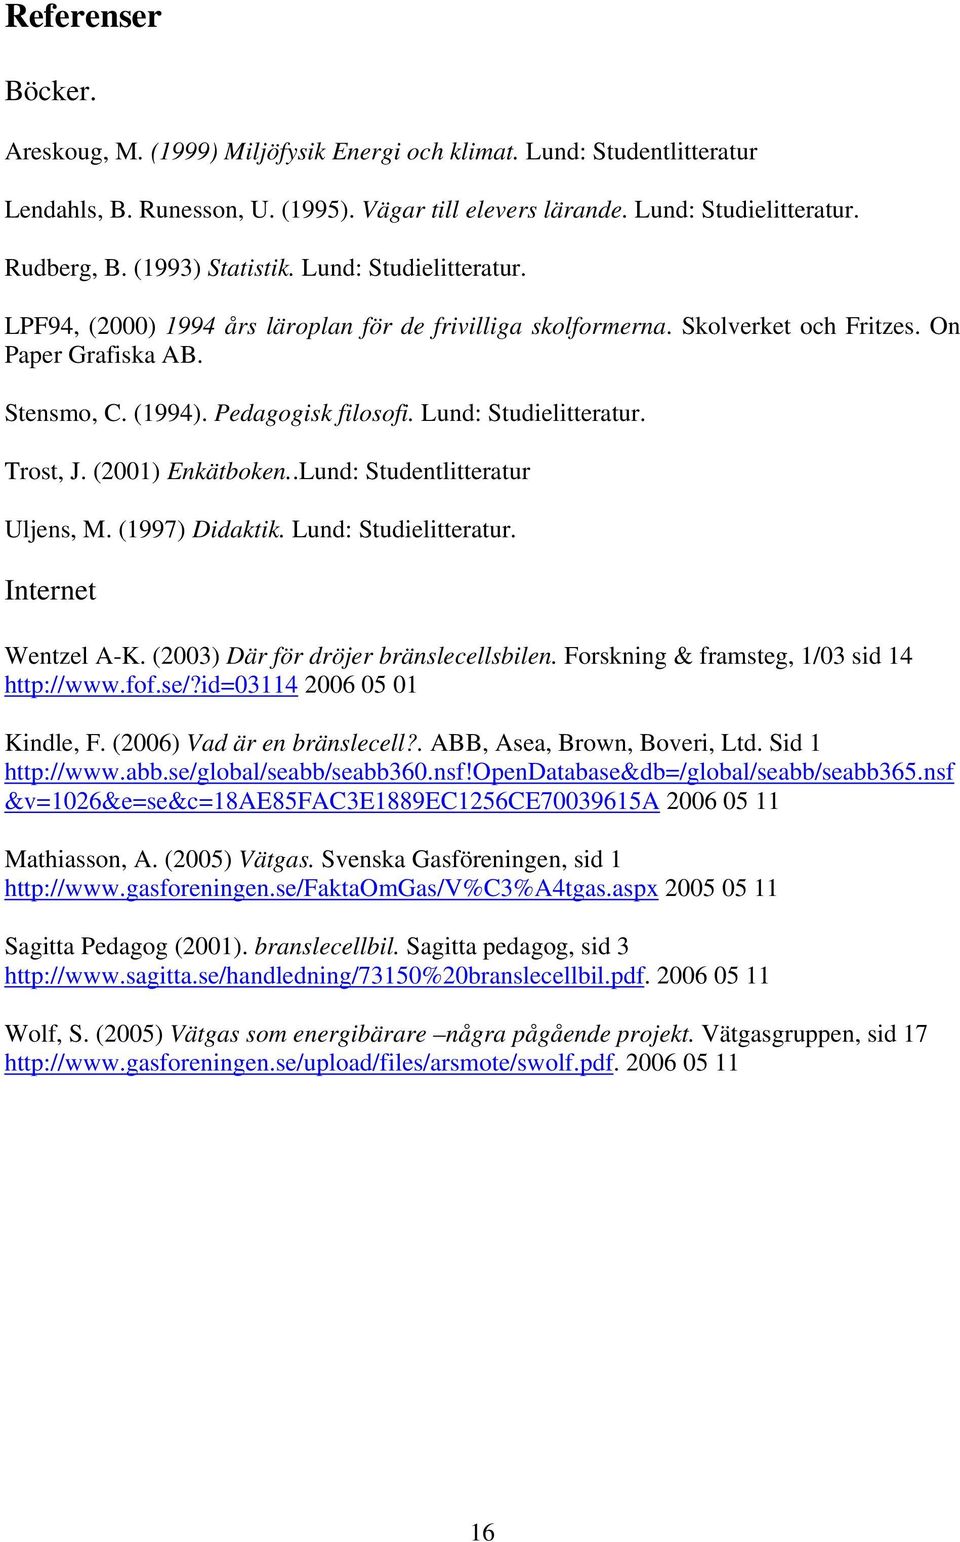 Lund: Studielitteratur. Trost, J. (2001) Enkätboken..Lund: Studentlitteratur Uljens, M. (1997) Didaktik. Lund: Studielitteratur. Internet Wentzel A-K. (2003) Där för dröjer bränslecellsbilen.